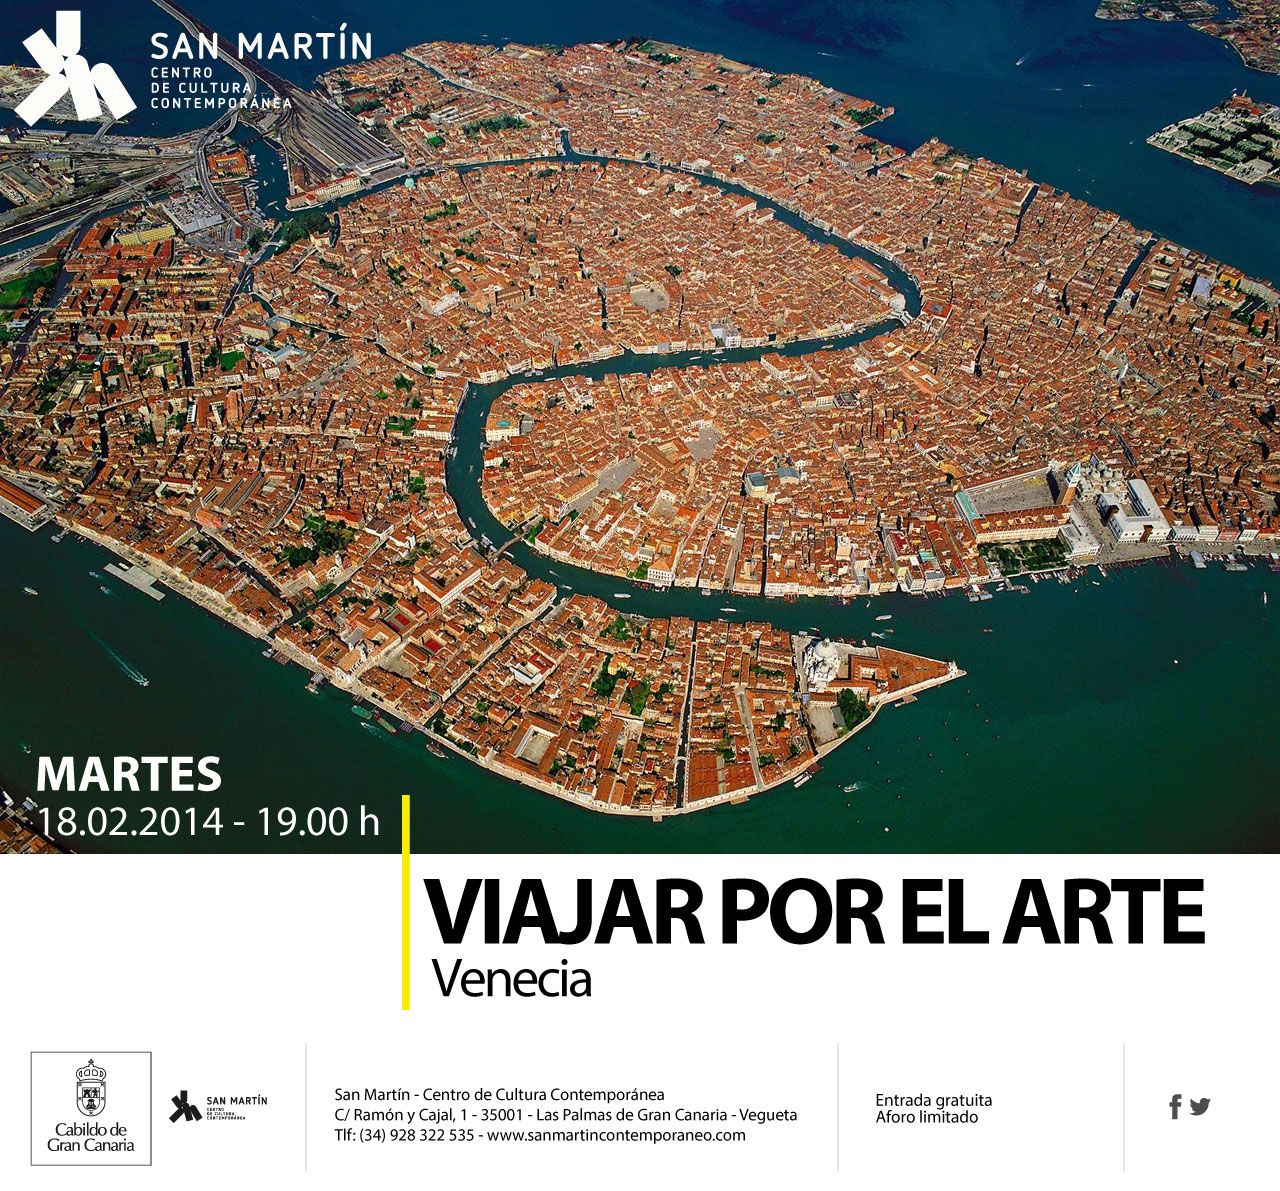 Viajar por el arte en San Martín - Venecia